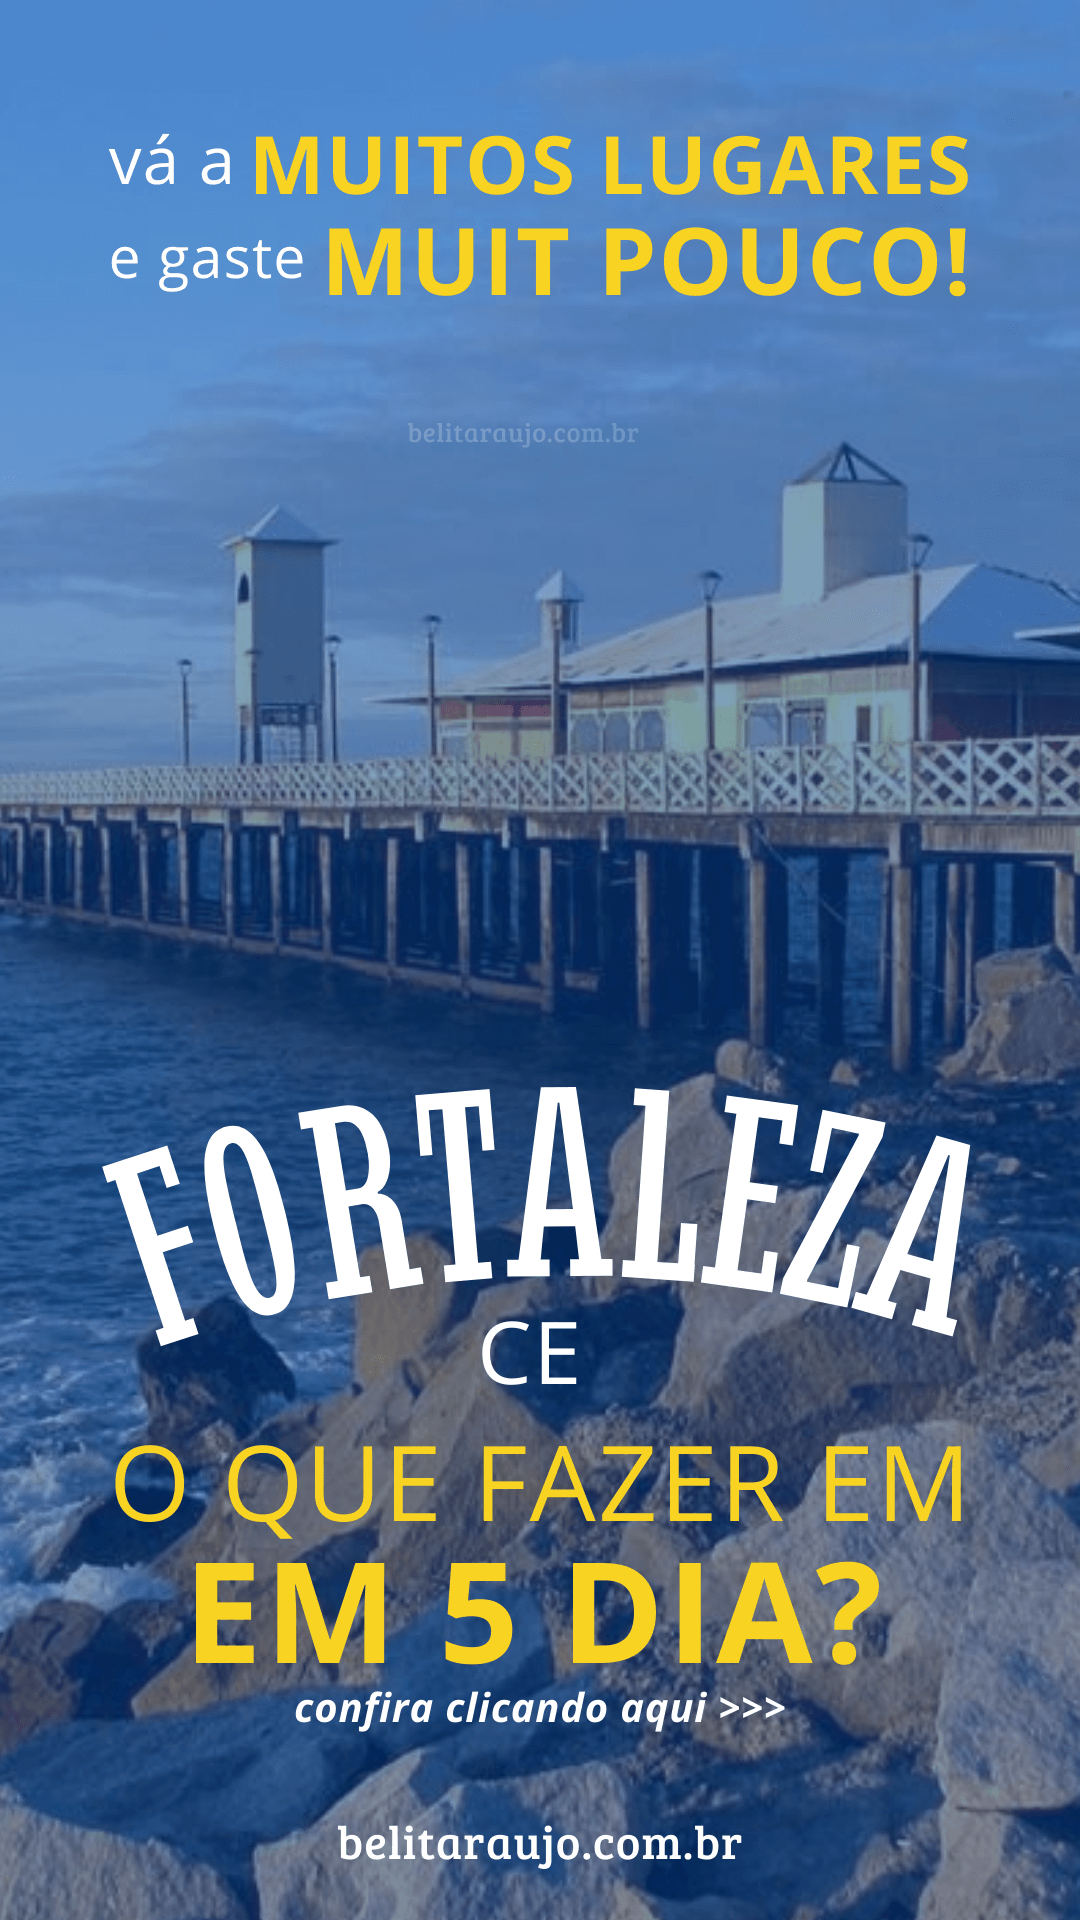 O que fazer em Fortaleza: Confira as dicas